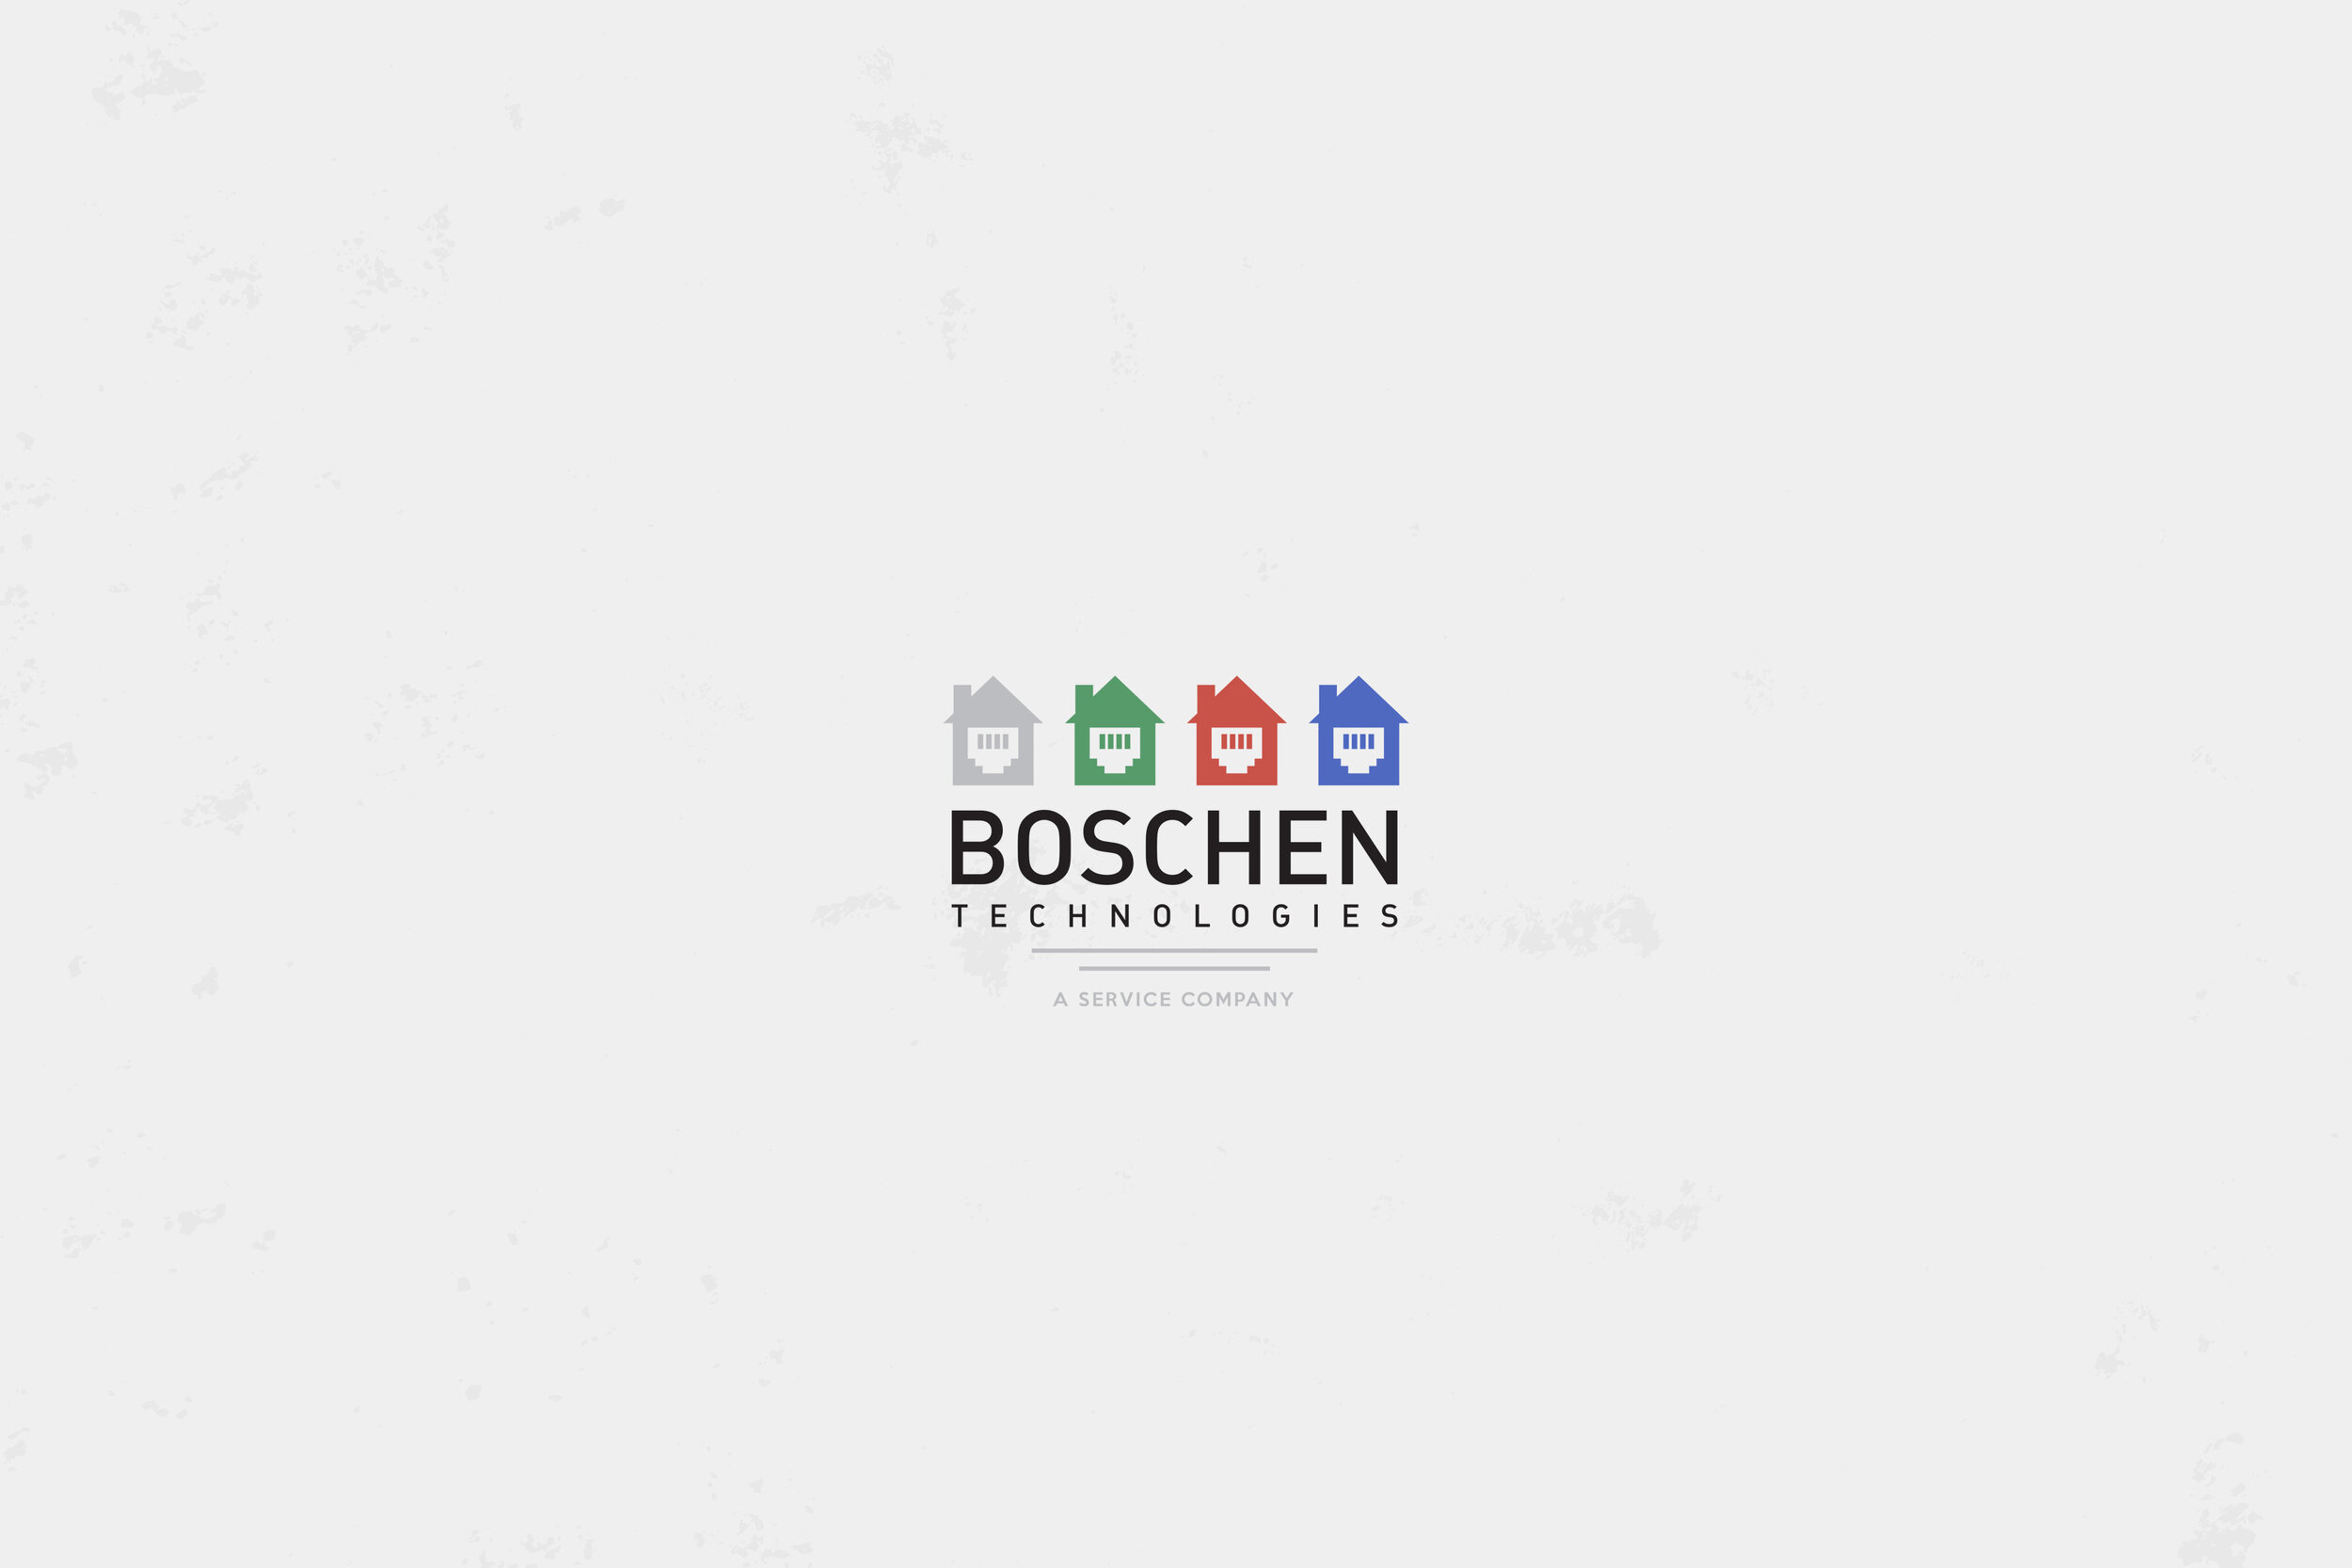 BOSCHEN-Website-Work-08.jpg